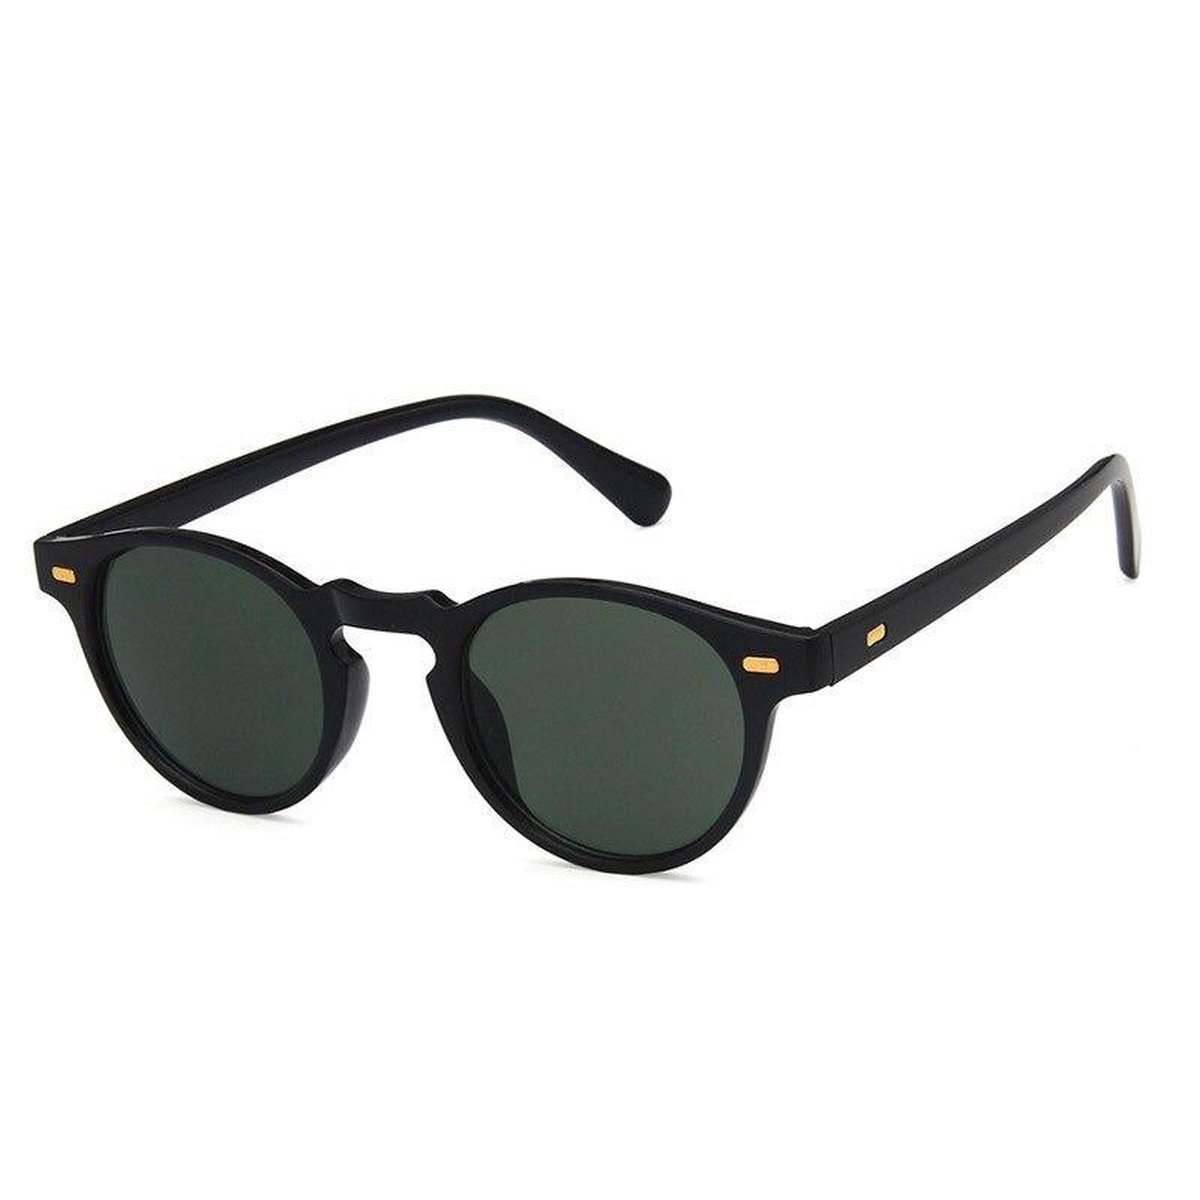 Kleine Zonnebril - Unisex Trendy Zonnebril - Zwart met Groene Glas